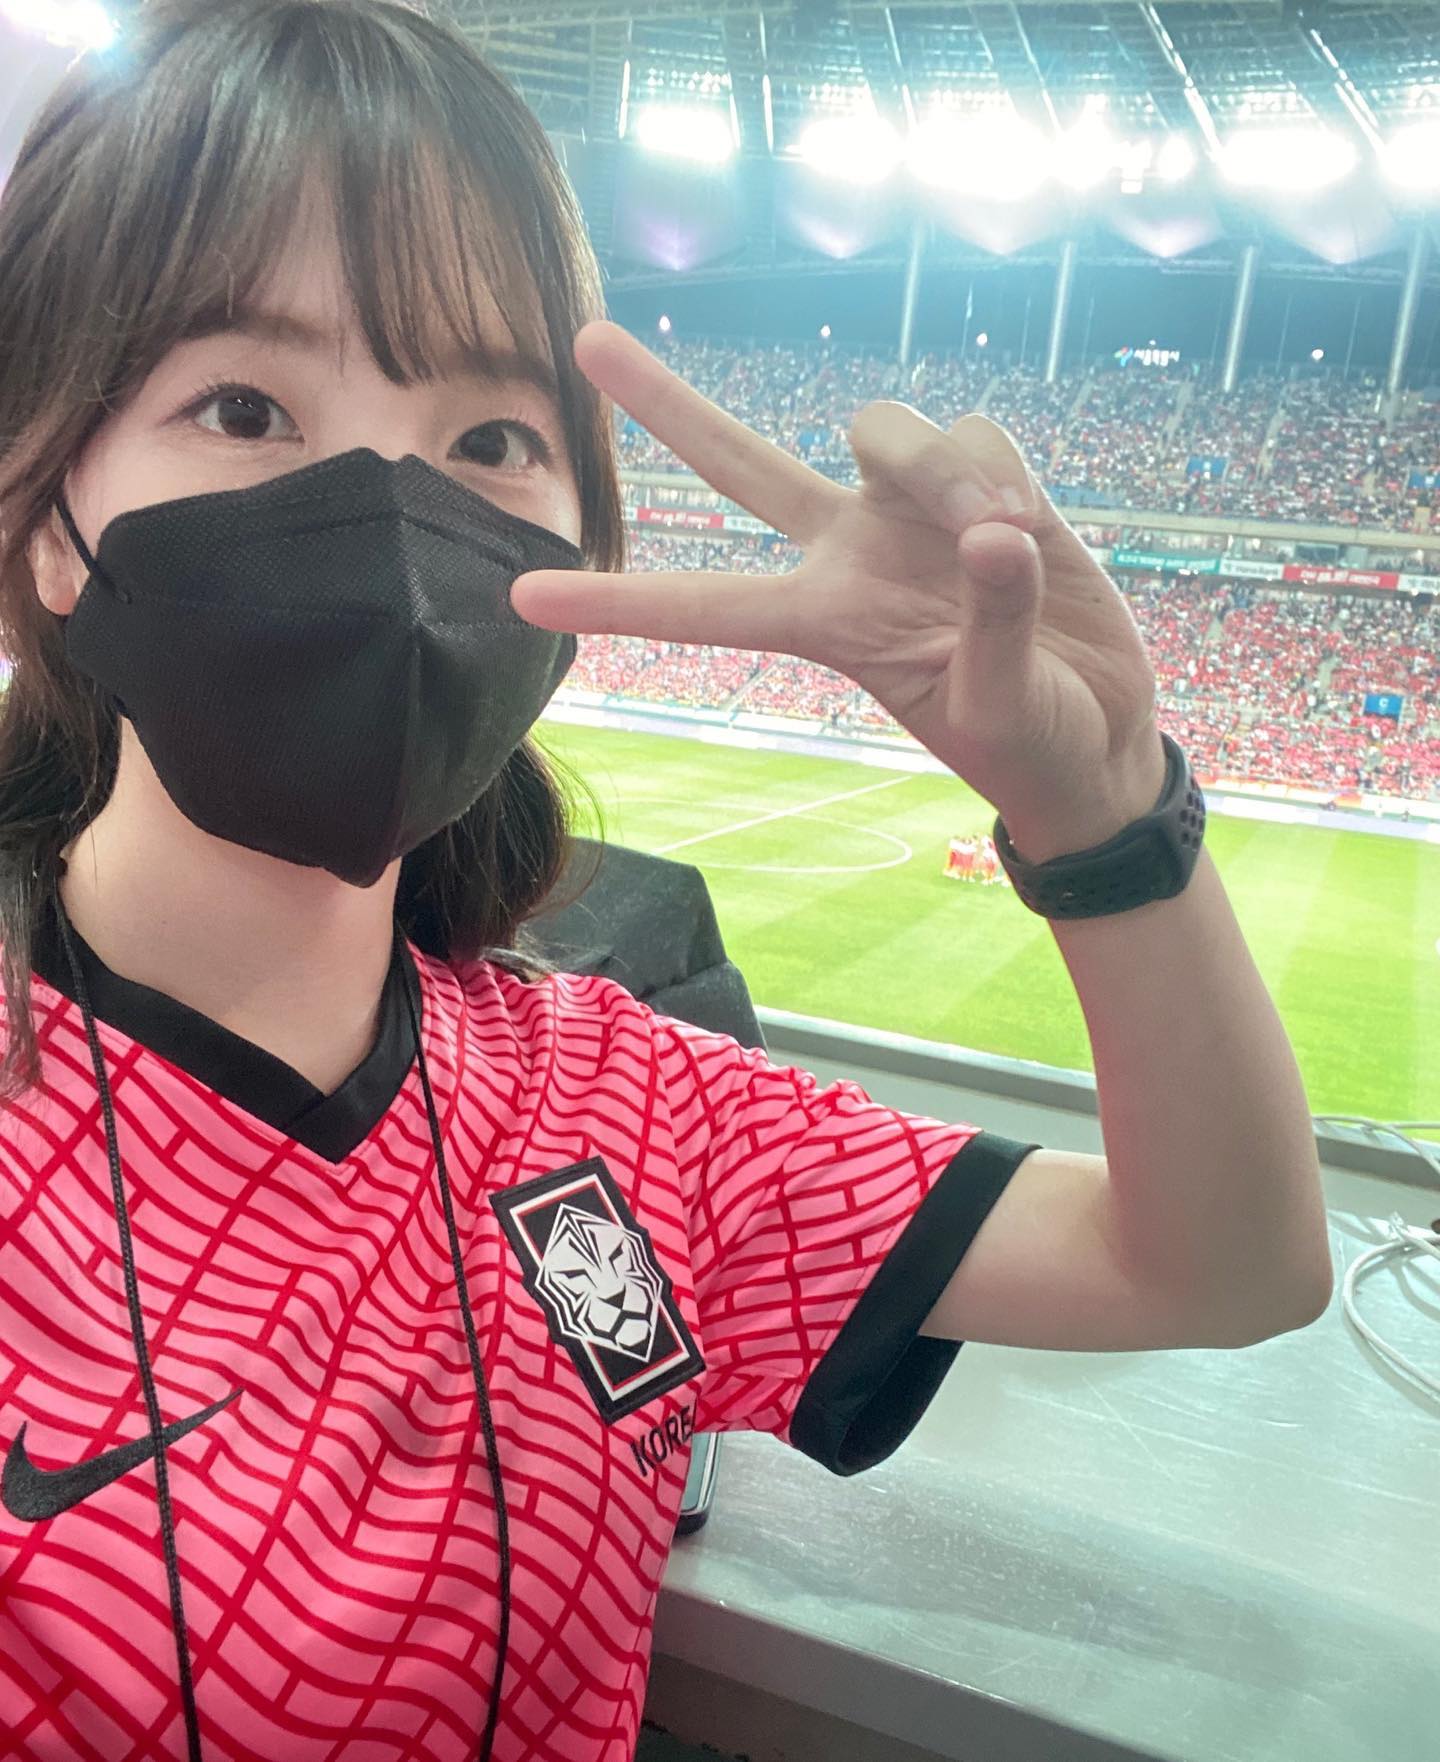 ❤️韩国女记者世界杯走红:遭国外球迷骚扰 侧颜神似王冰冰的枪迷